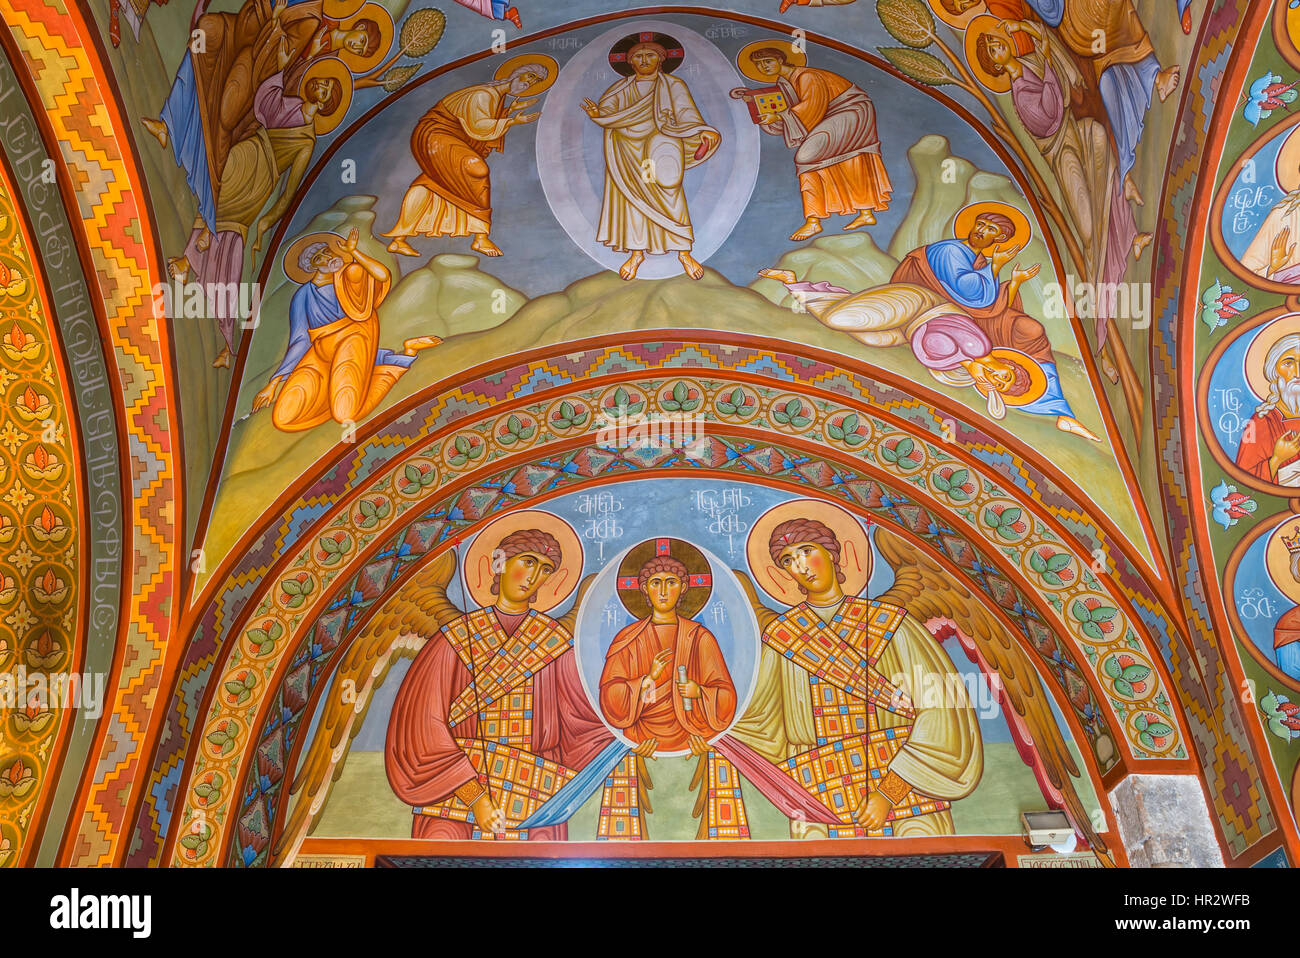 La Cathédrale Sioni, fresques intérieures représentant des scènes bibliques, Tbilissi, Géorgie, Caucase, Moyen-Orient, Asie Banque D'Images